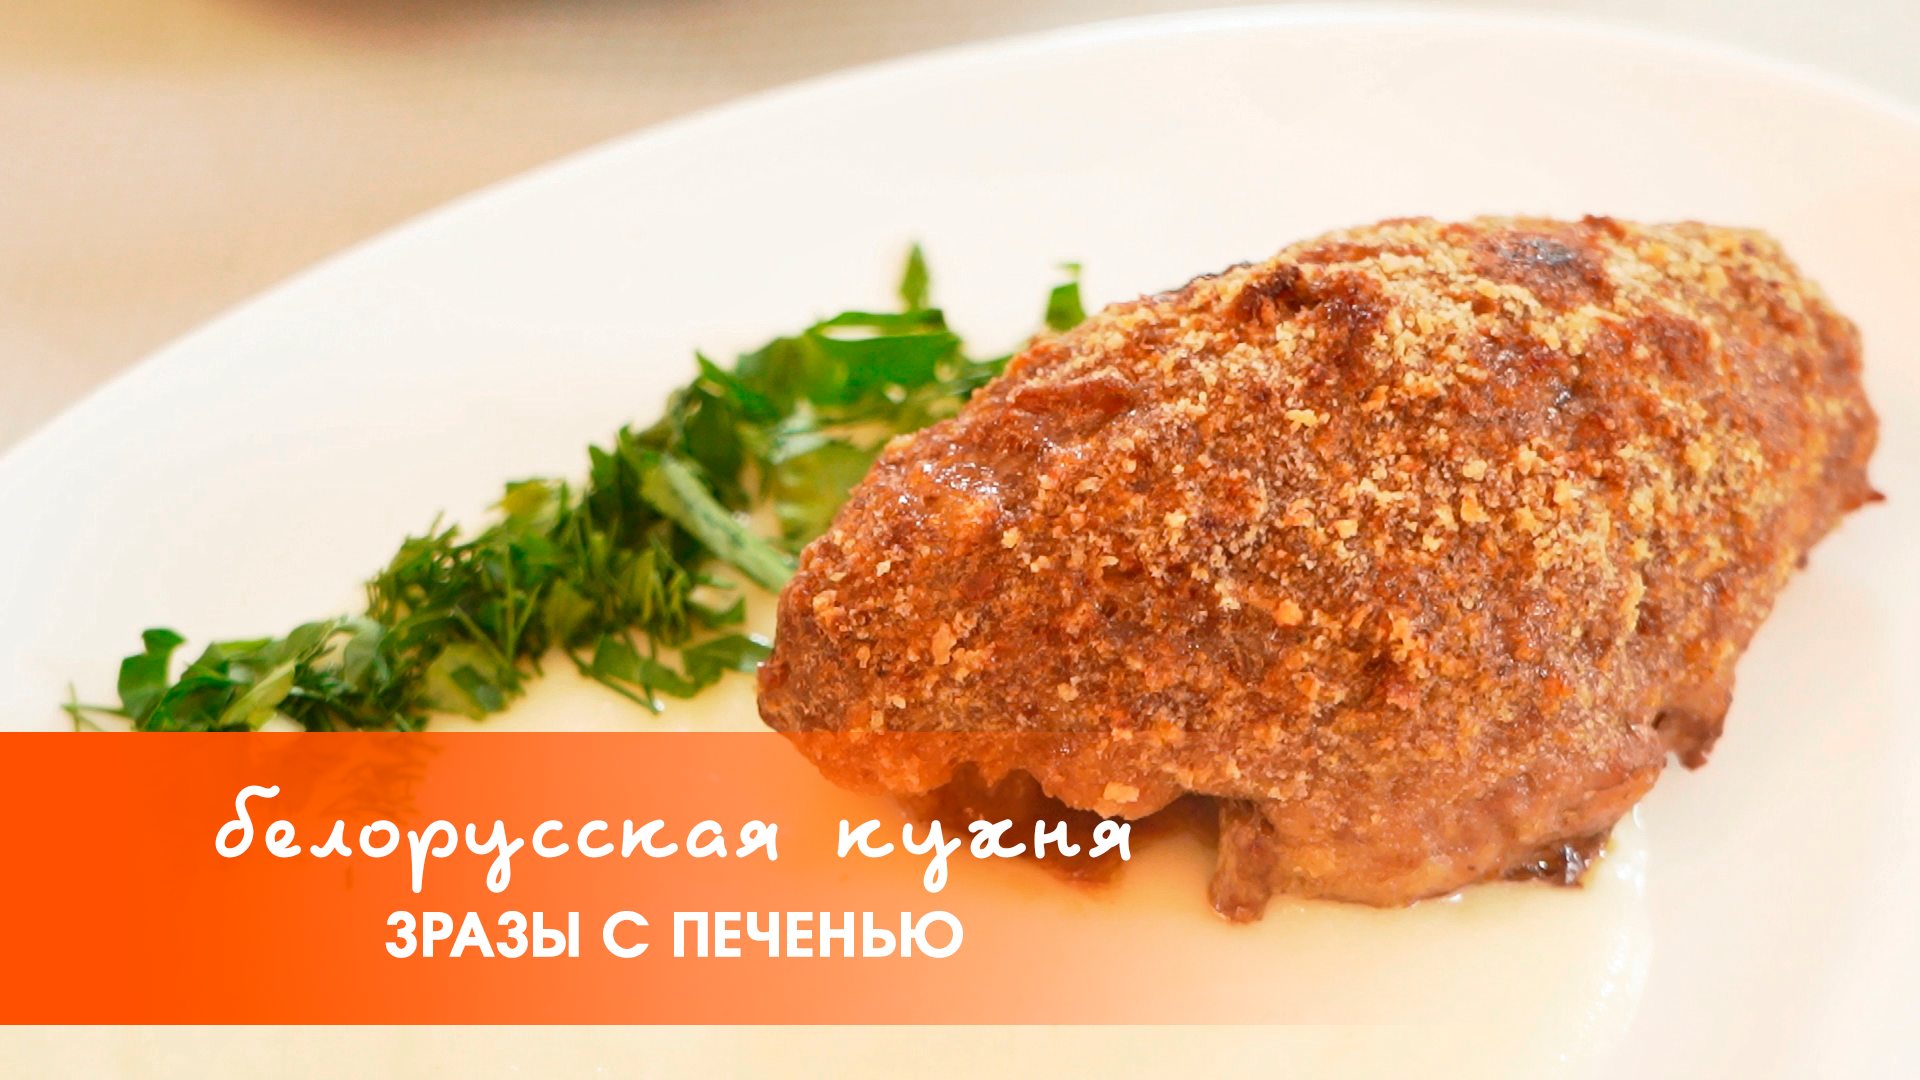 Белорусская кухня: зразы с печенью